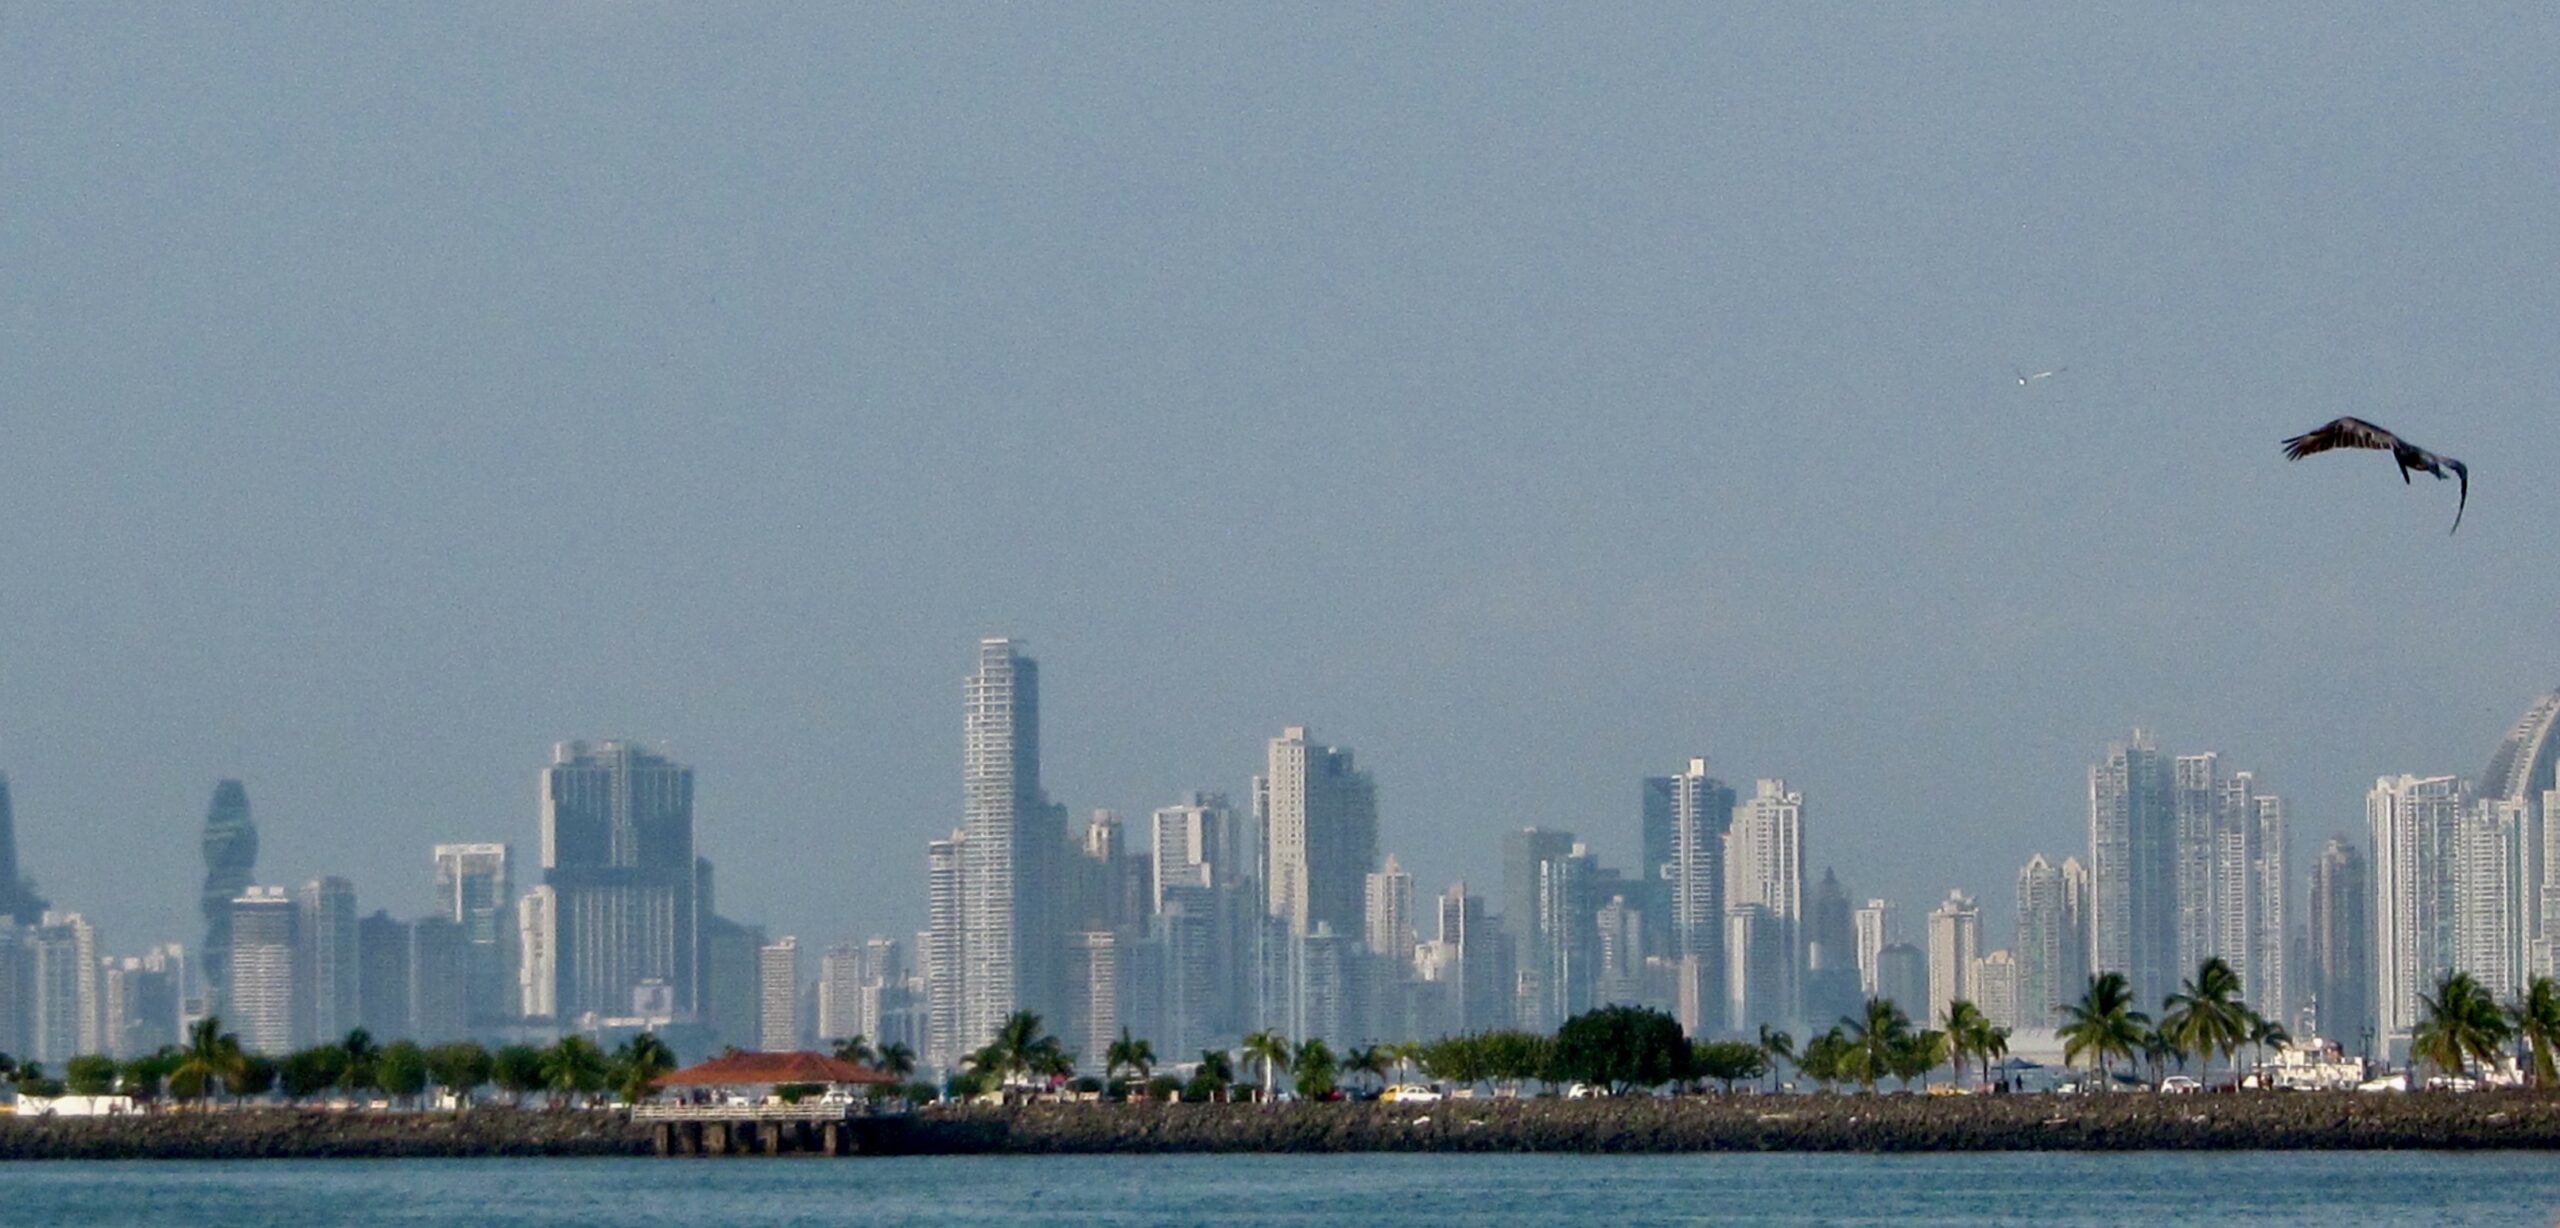 Panama City vista from the sea